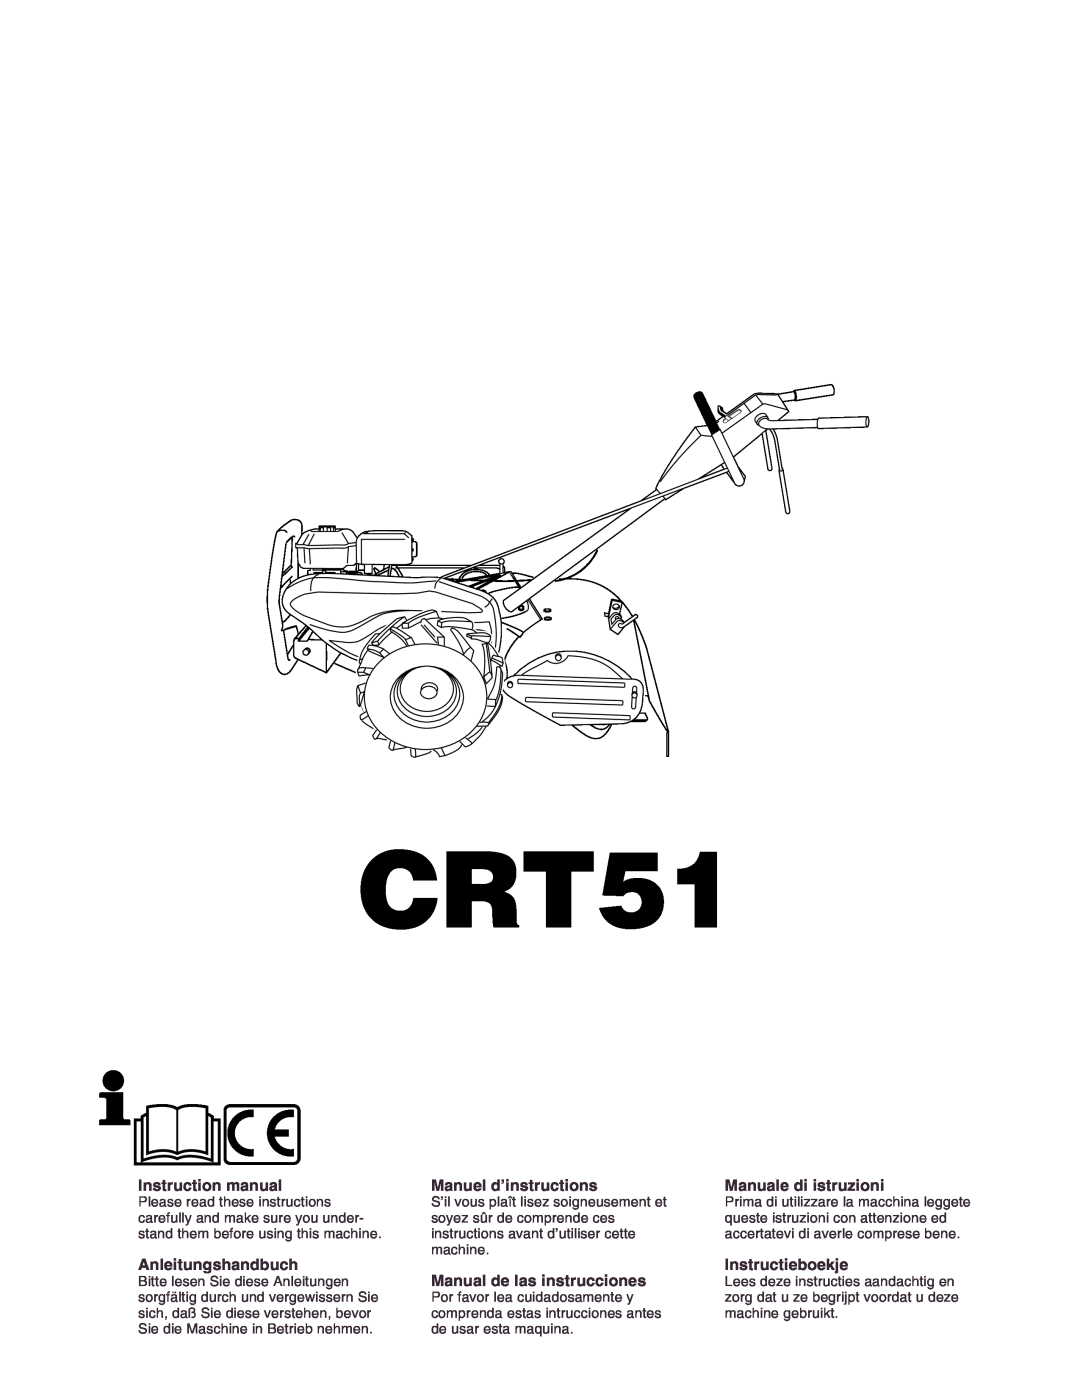 Husqvarna crt51 instruction manual CRT51, Anleitungshandbuch, Manuel d’instructions, Manual de las instrucciones 